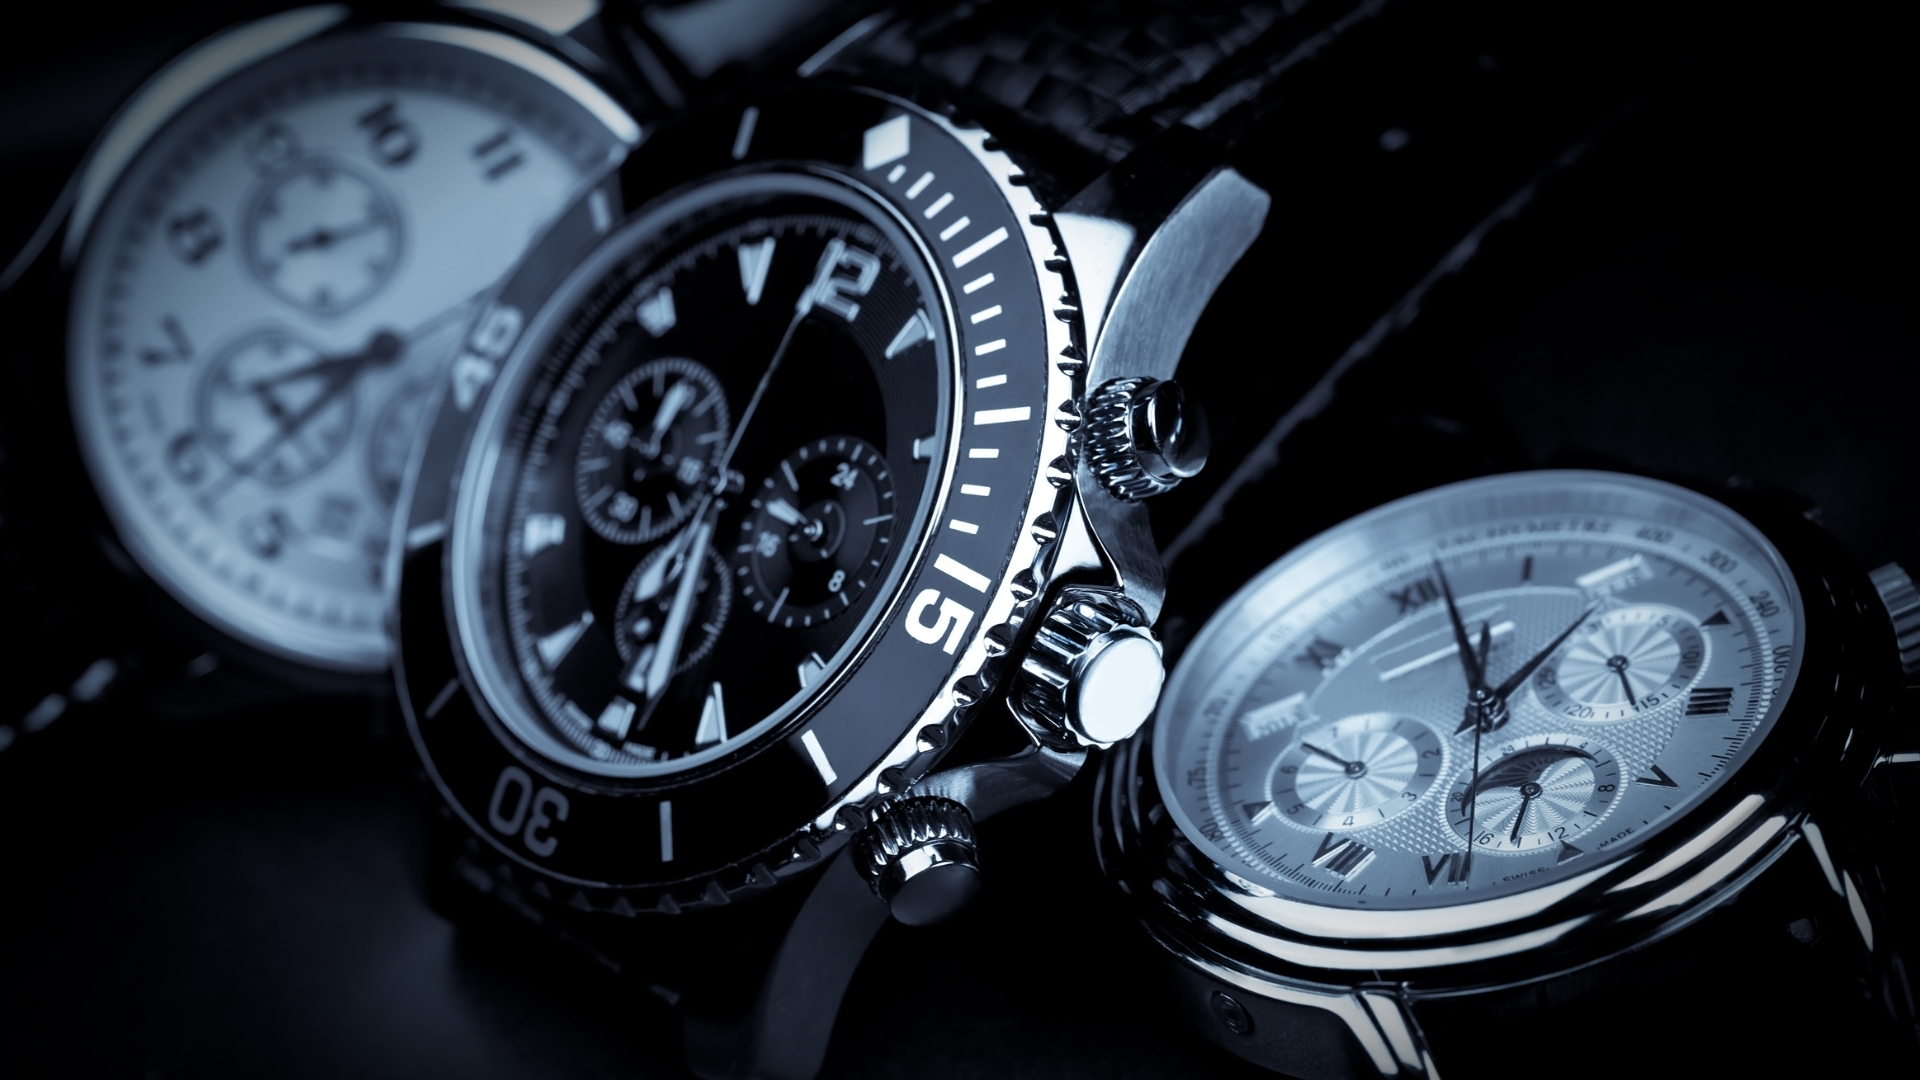 Leilão Dedalo: diversos relógios com preços incríveis!